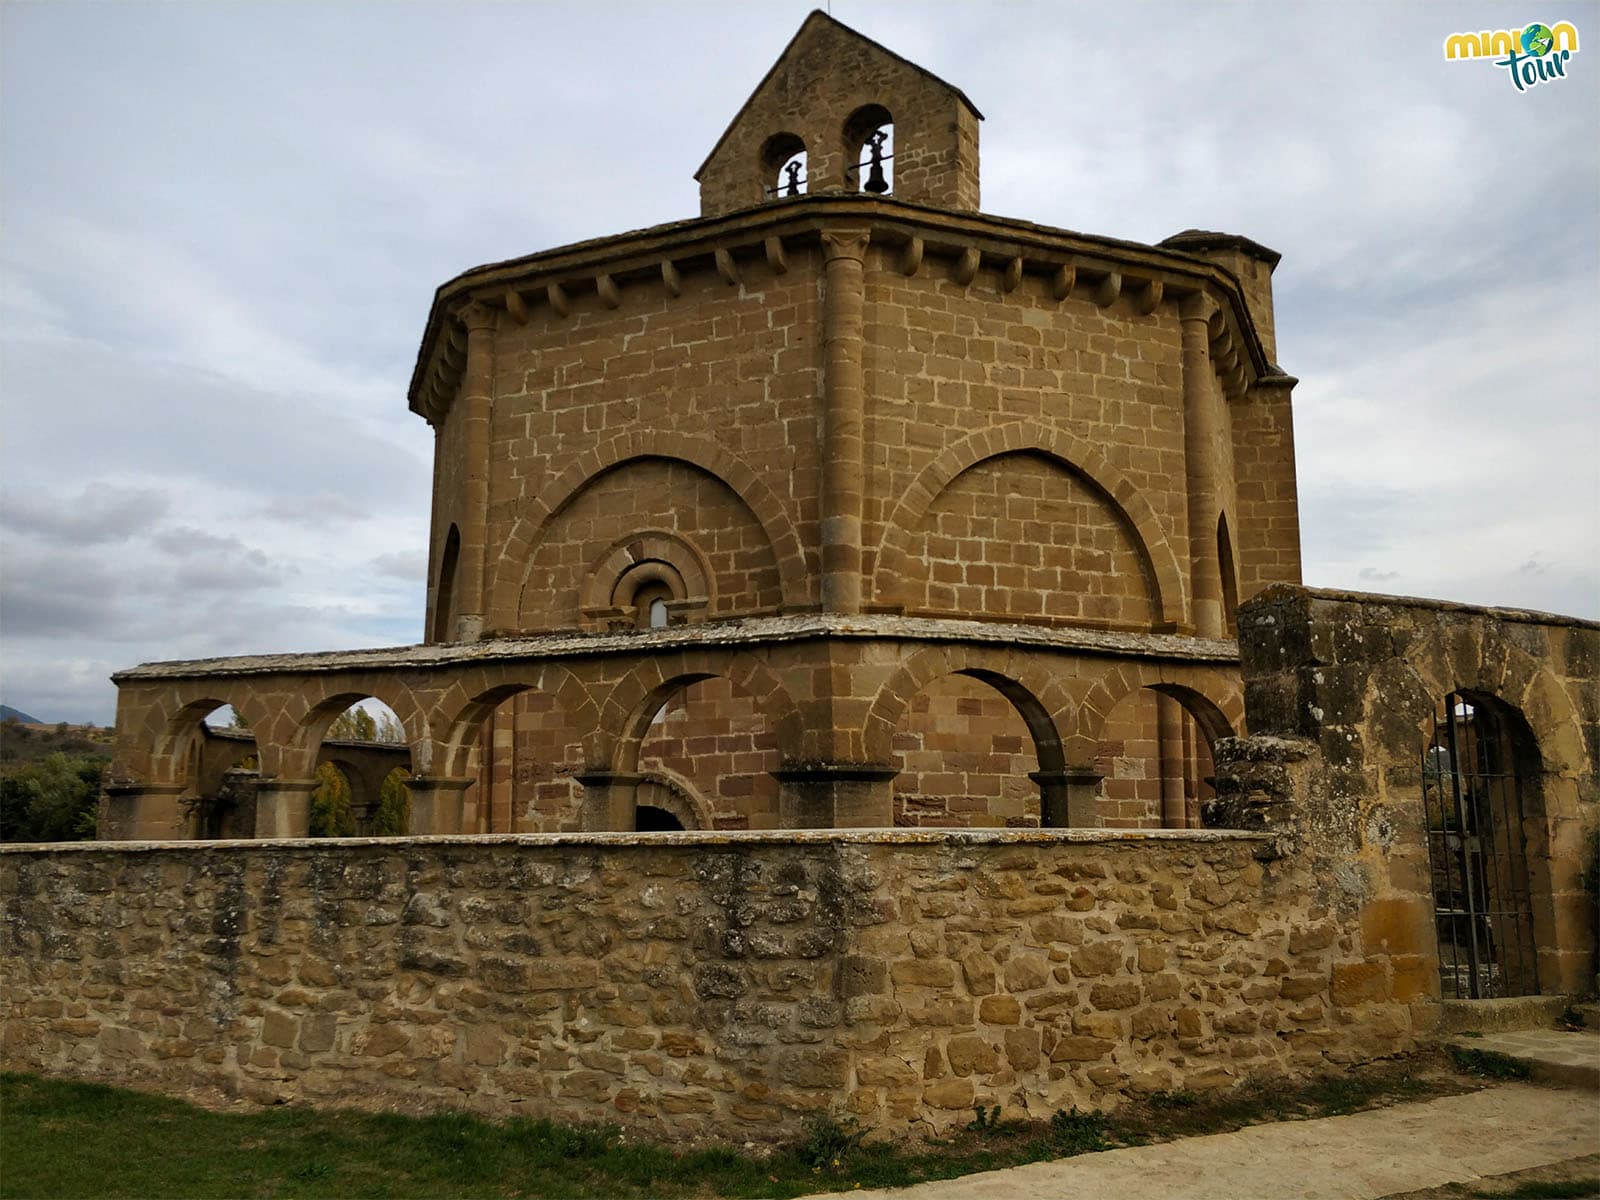 Santa María de Eunate